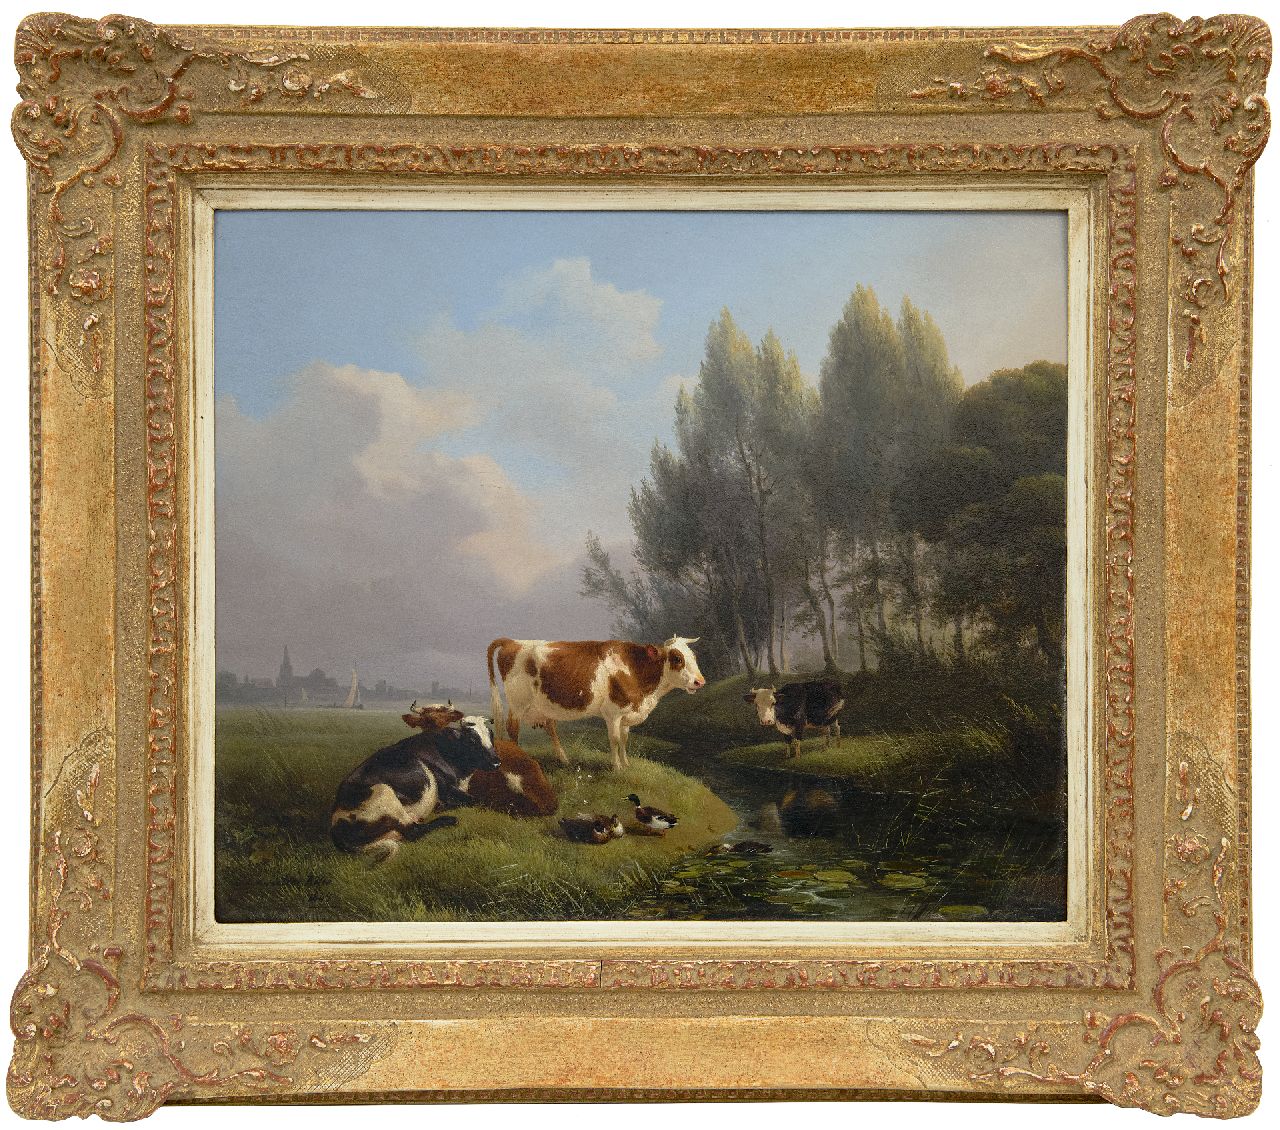 Ronner-Knip H.  | Henriette Ronner-Knip, Rustend vee in een wei, Den Bosch in de verte, olieverf op paneel 33,0 x 39,2 cm, gesigneerd linksonder en gedateerd 1845